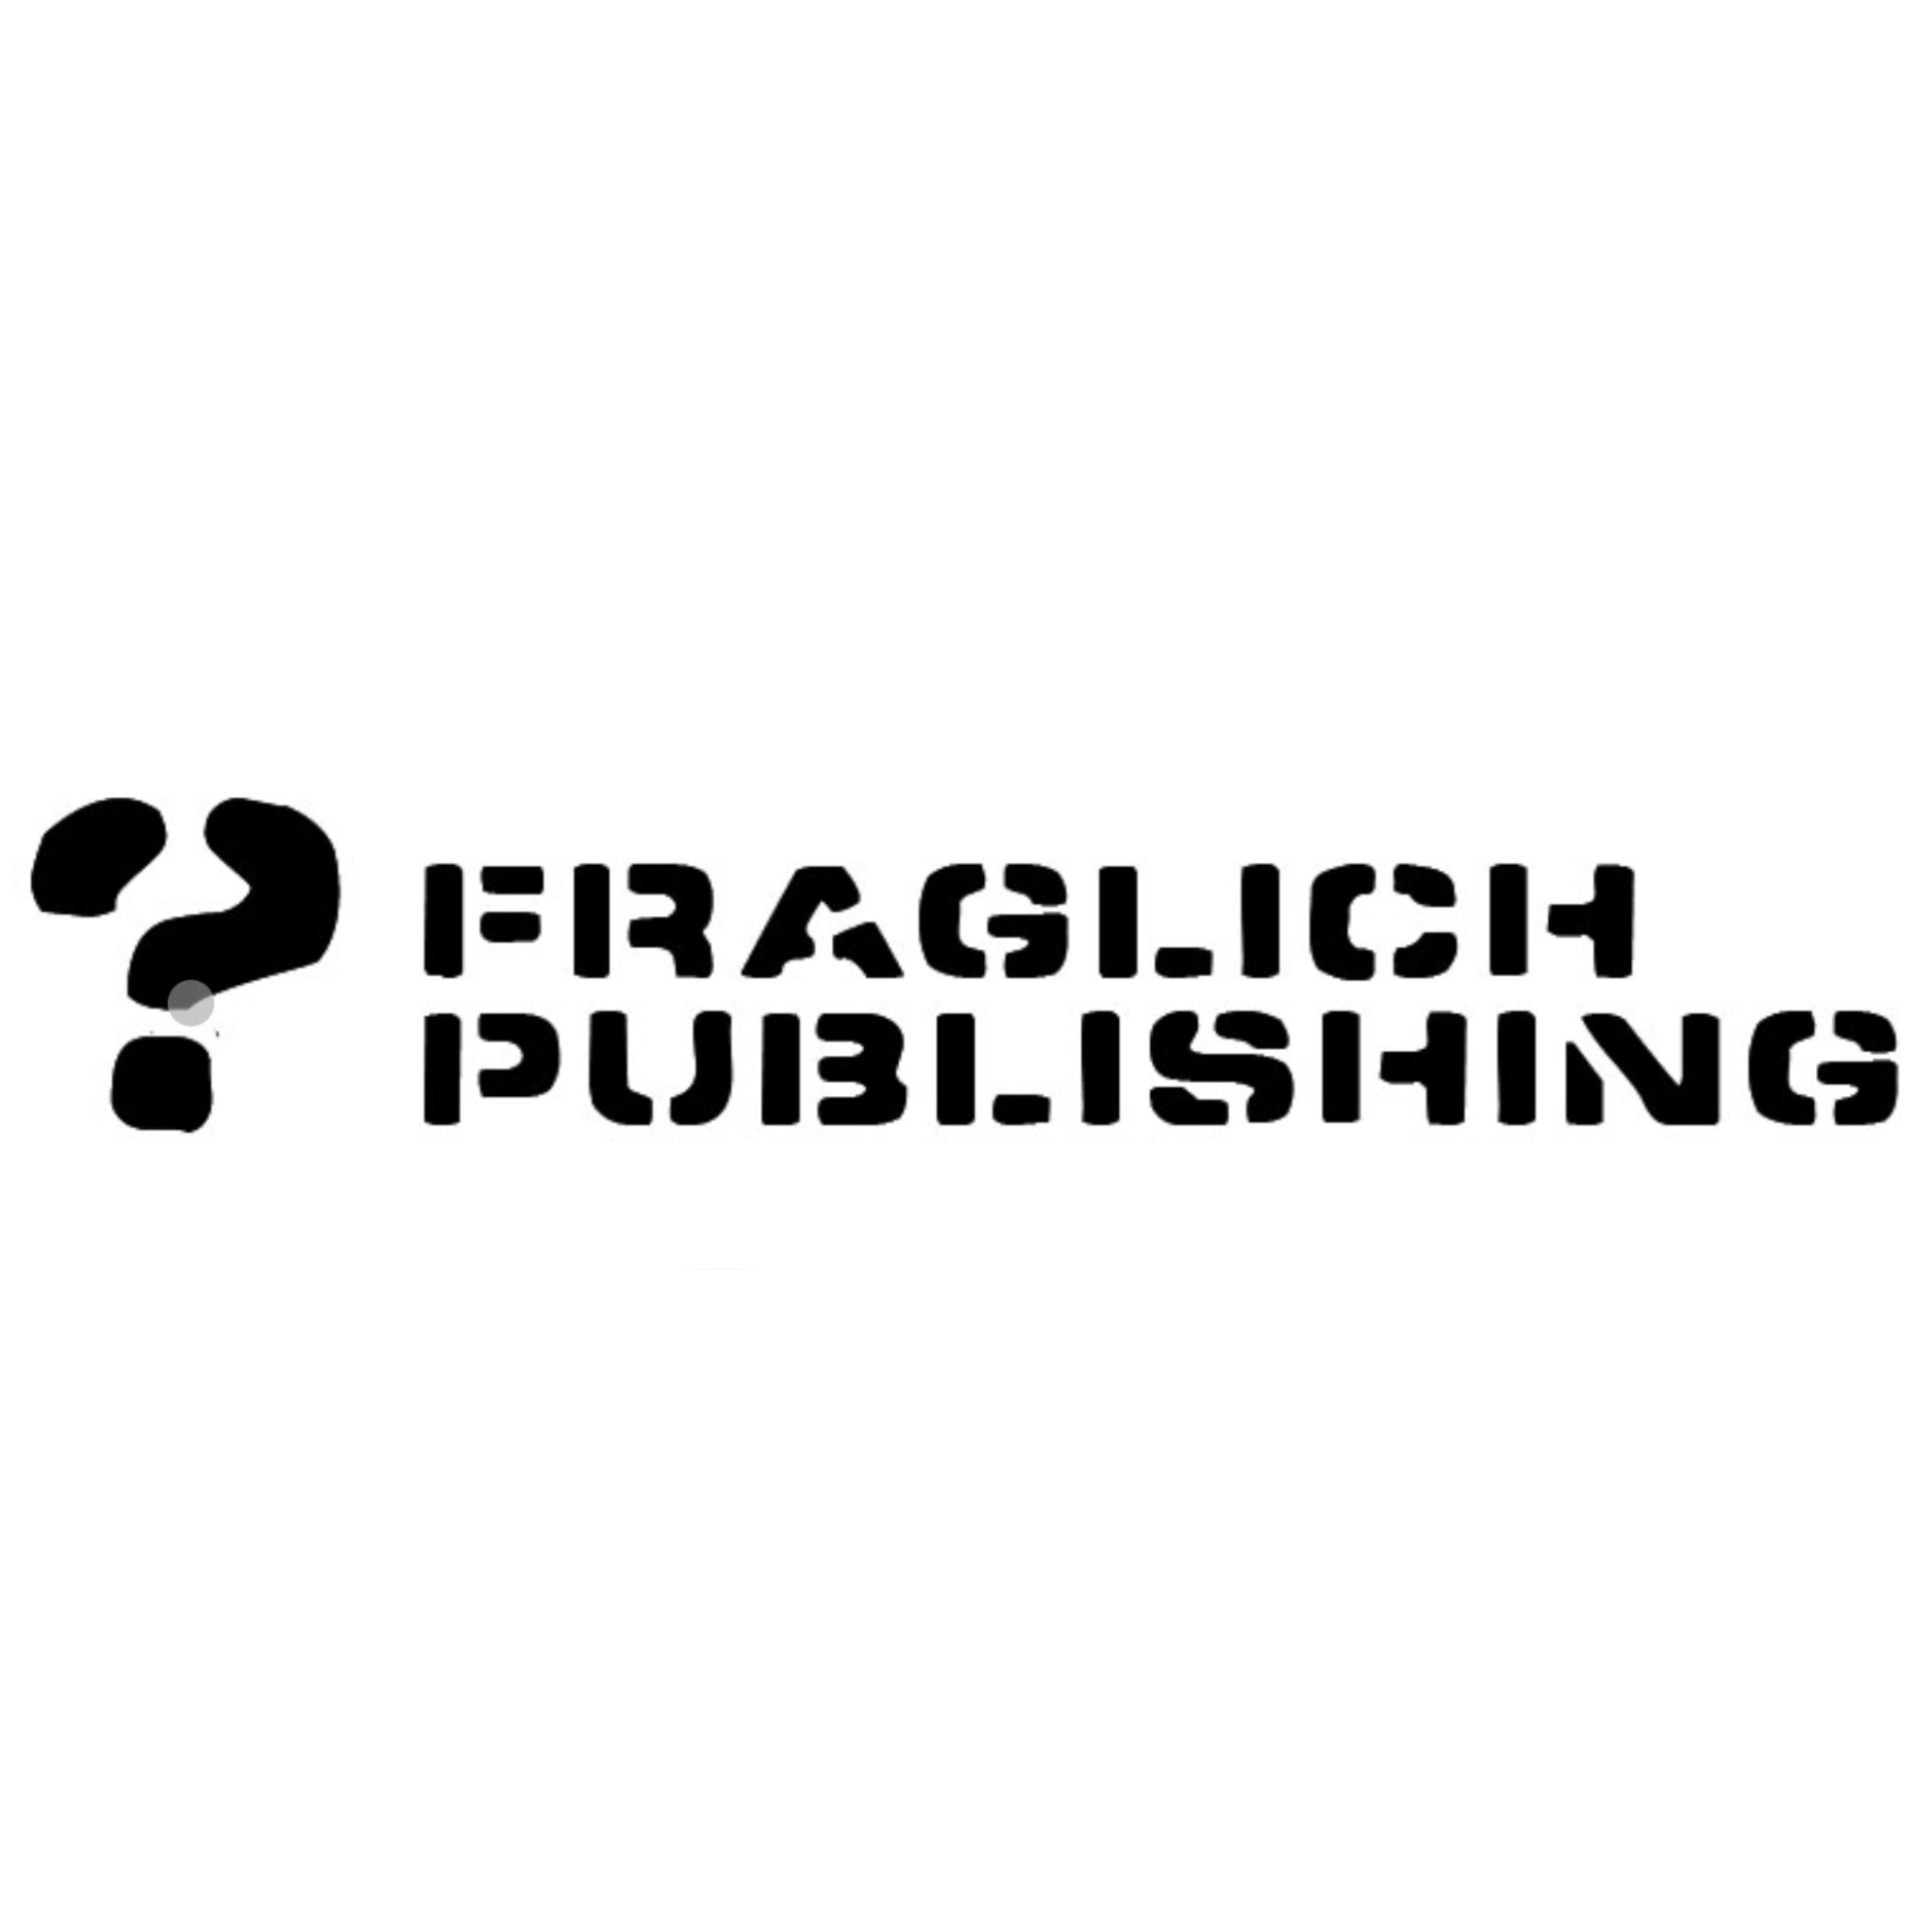 Fraglich Publishing